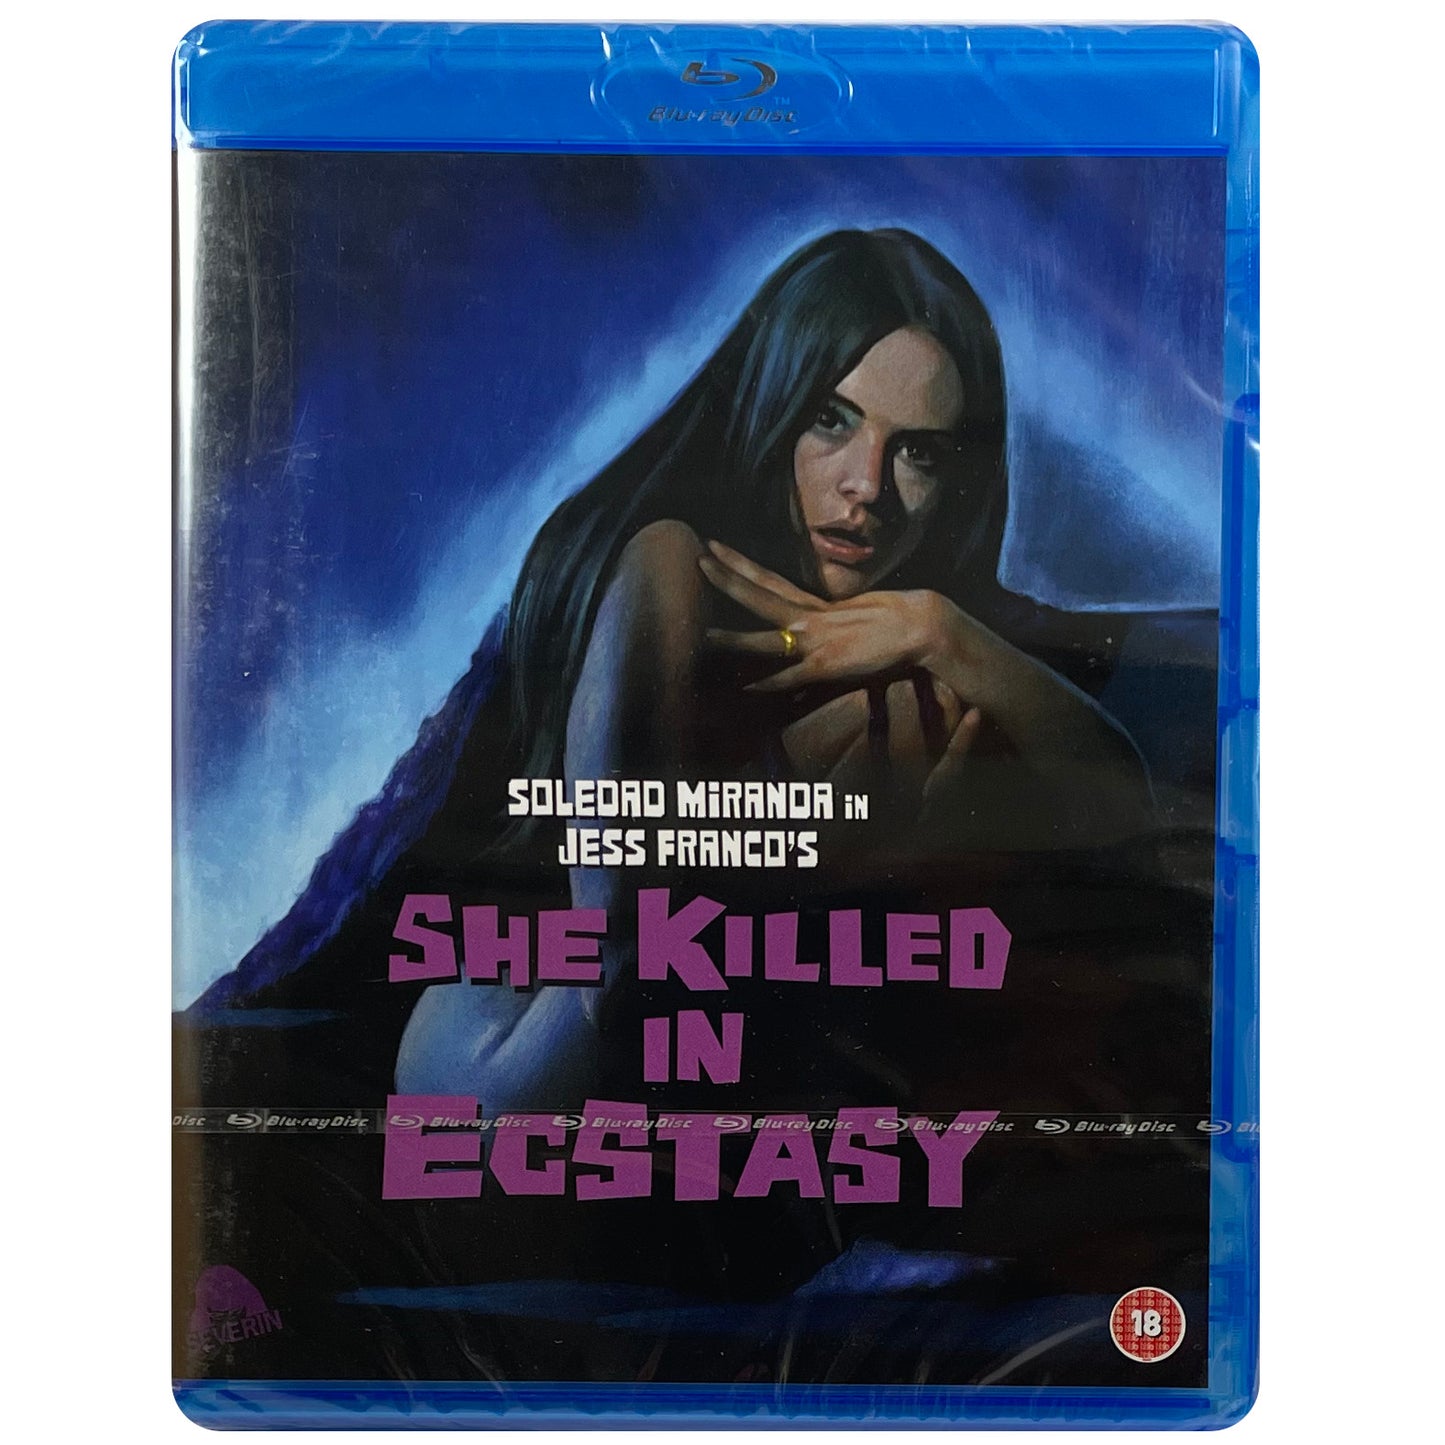 She Killed in Ecstasy Blu-Ray